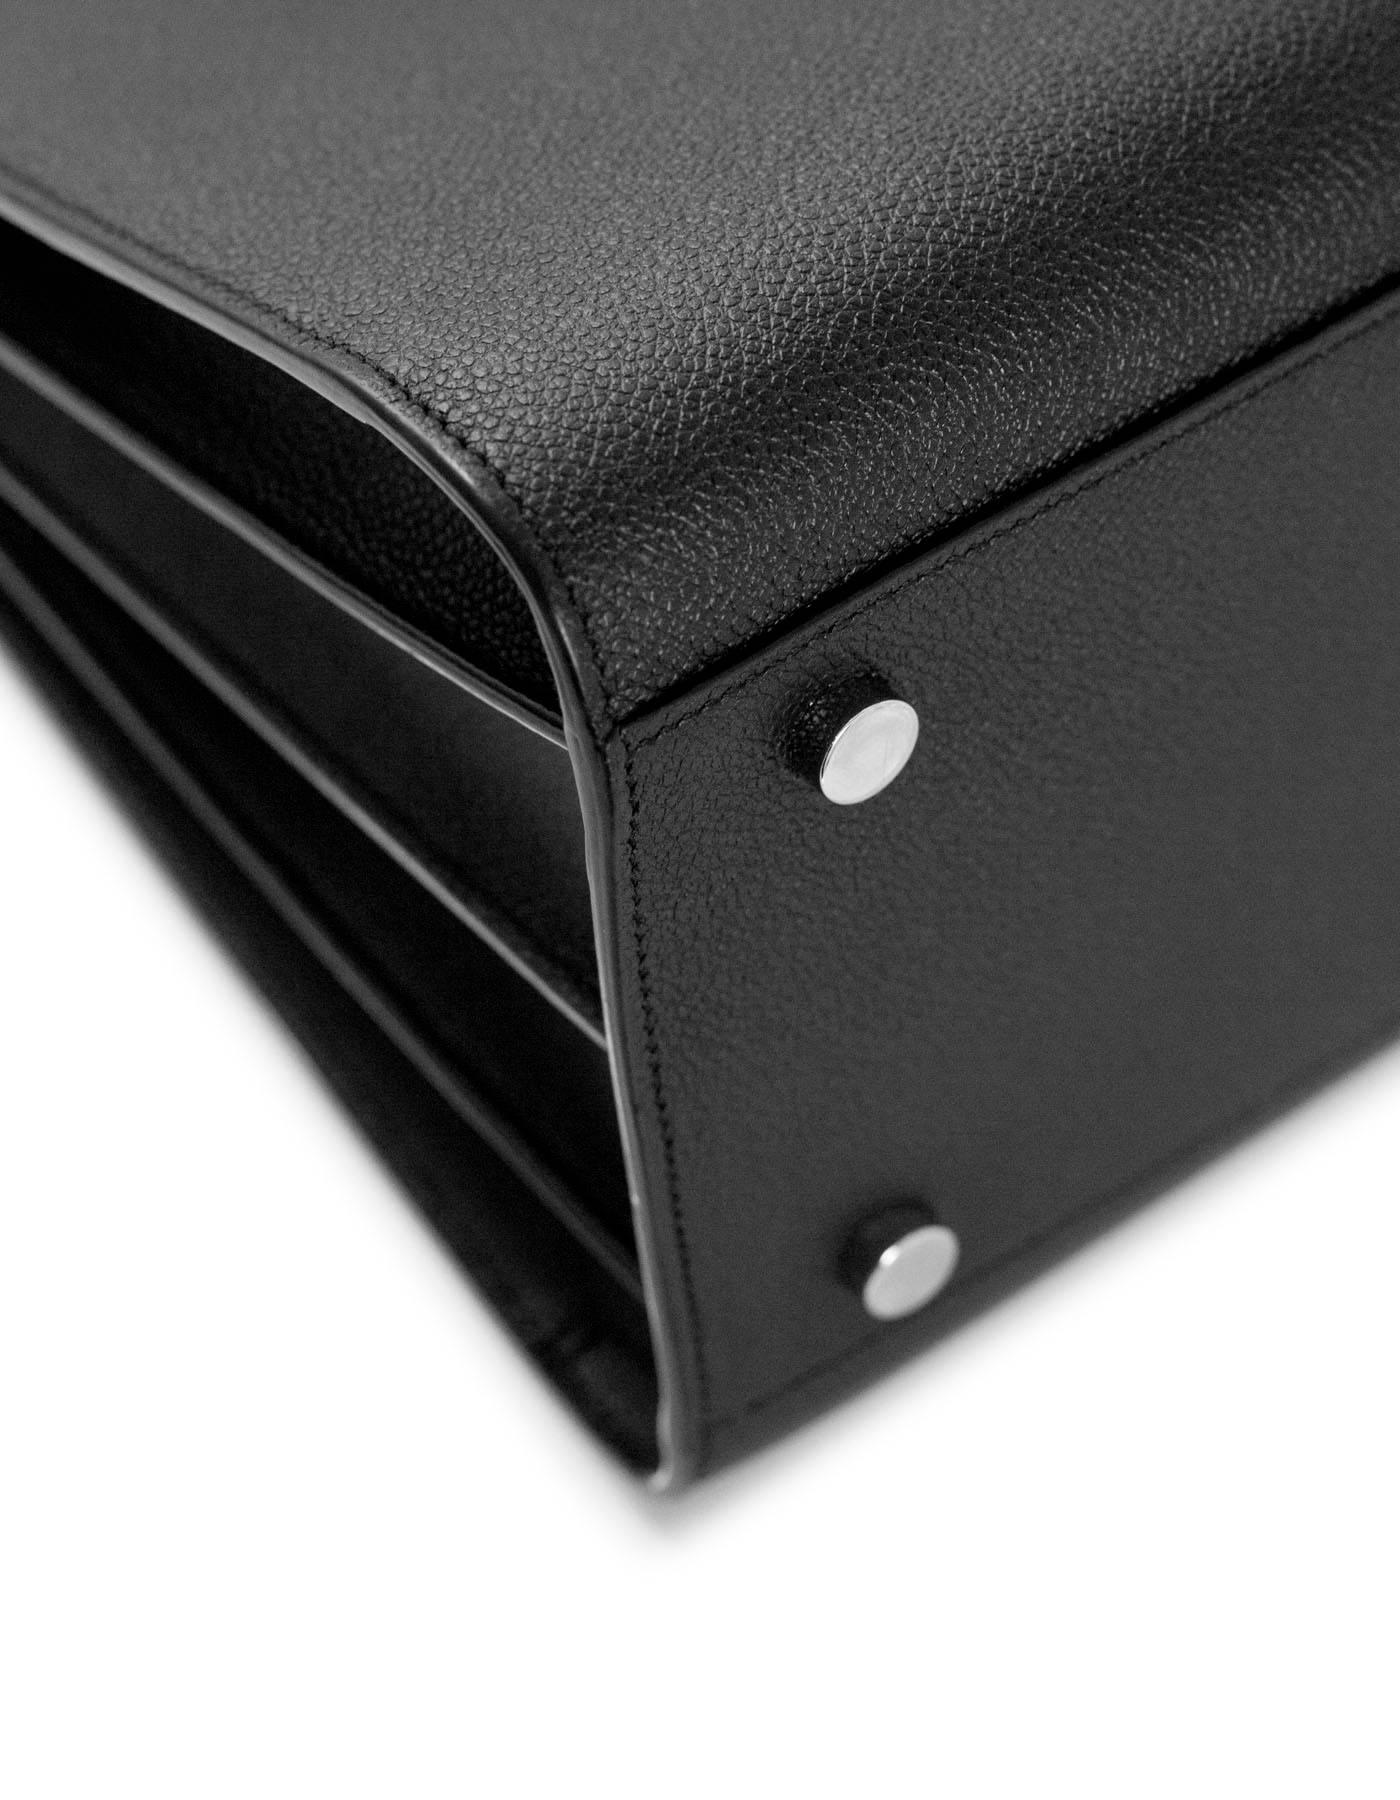 Yves Saint Laurent Black Pebbled Leather Small Sac De Jour Tote Bag 1